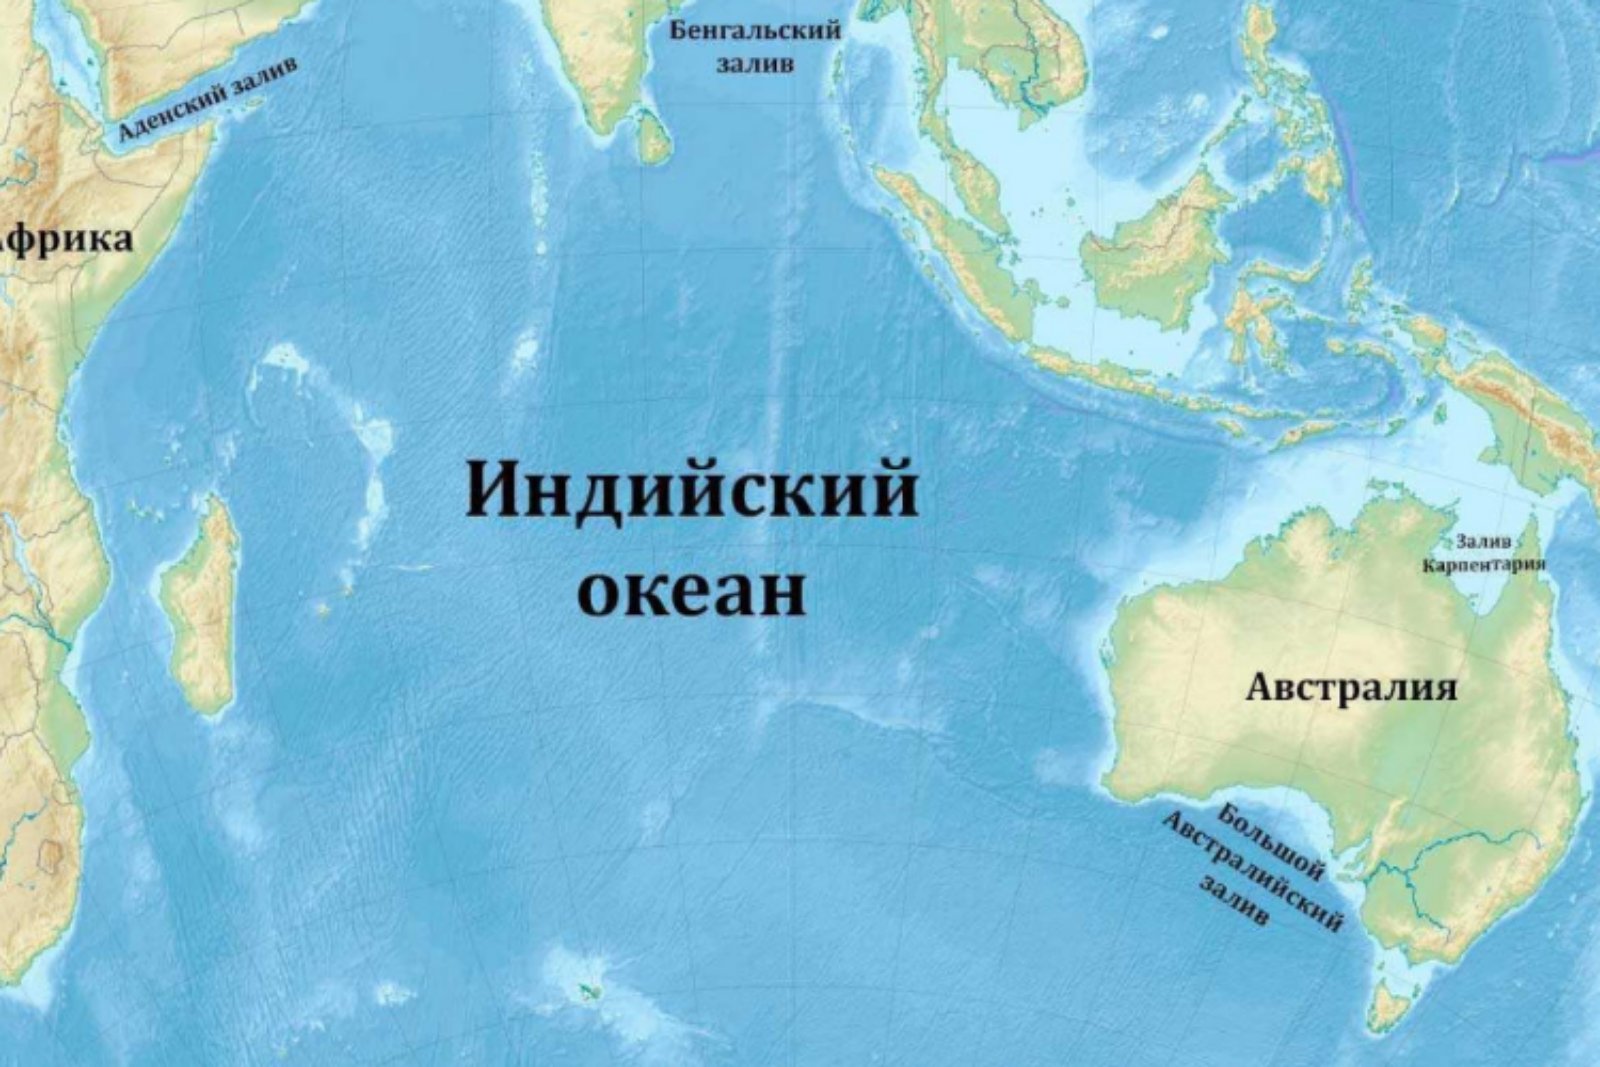 Местоположение океанов